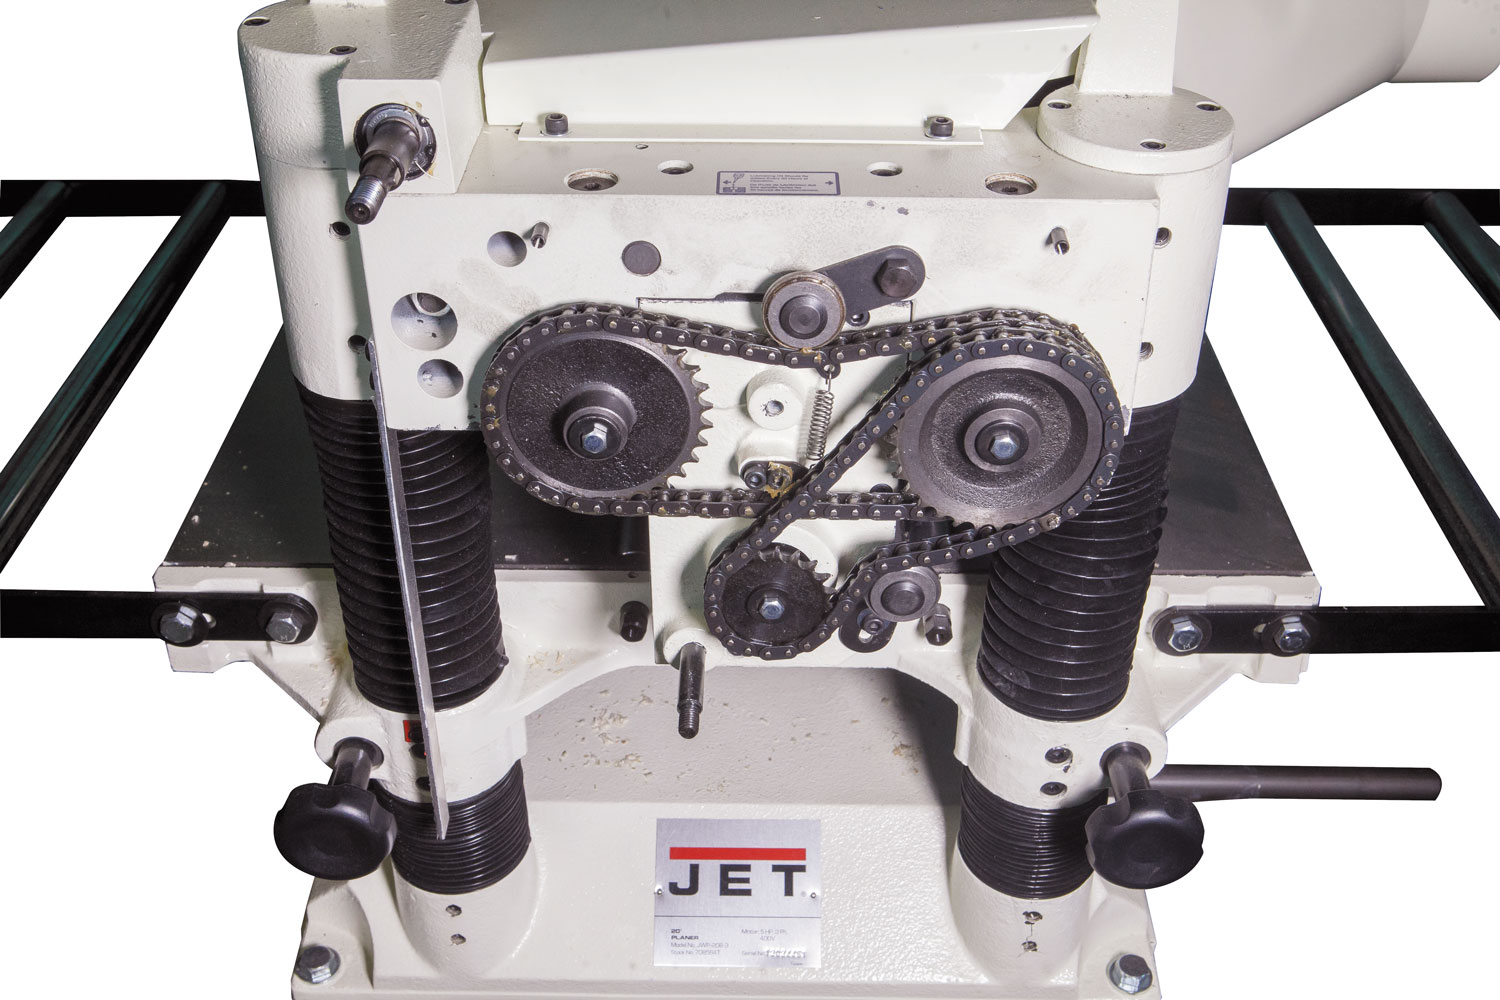 Jet Швейцария  Широкий ассортимент станков для работы с деревом и металлом. Большинство моделей адресовано профессионалам и предназначено для эксплуатации в условиях небольших мастерских и промышленных предприятий. Но есть и отдельная серия начального уровня для хобби.